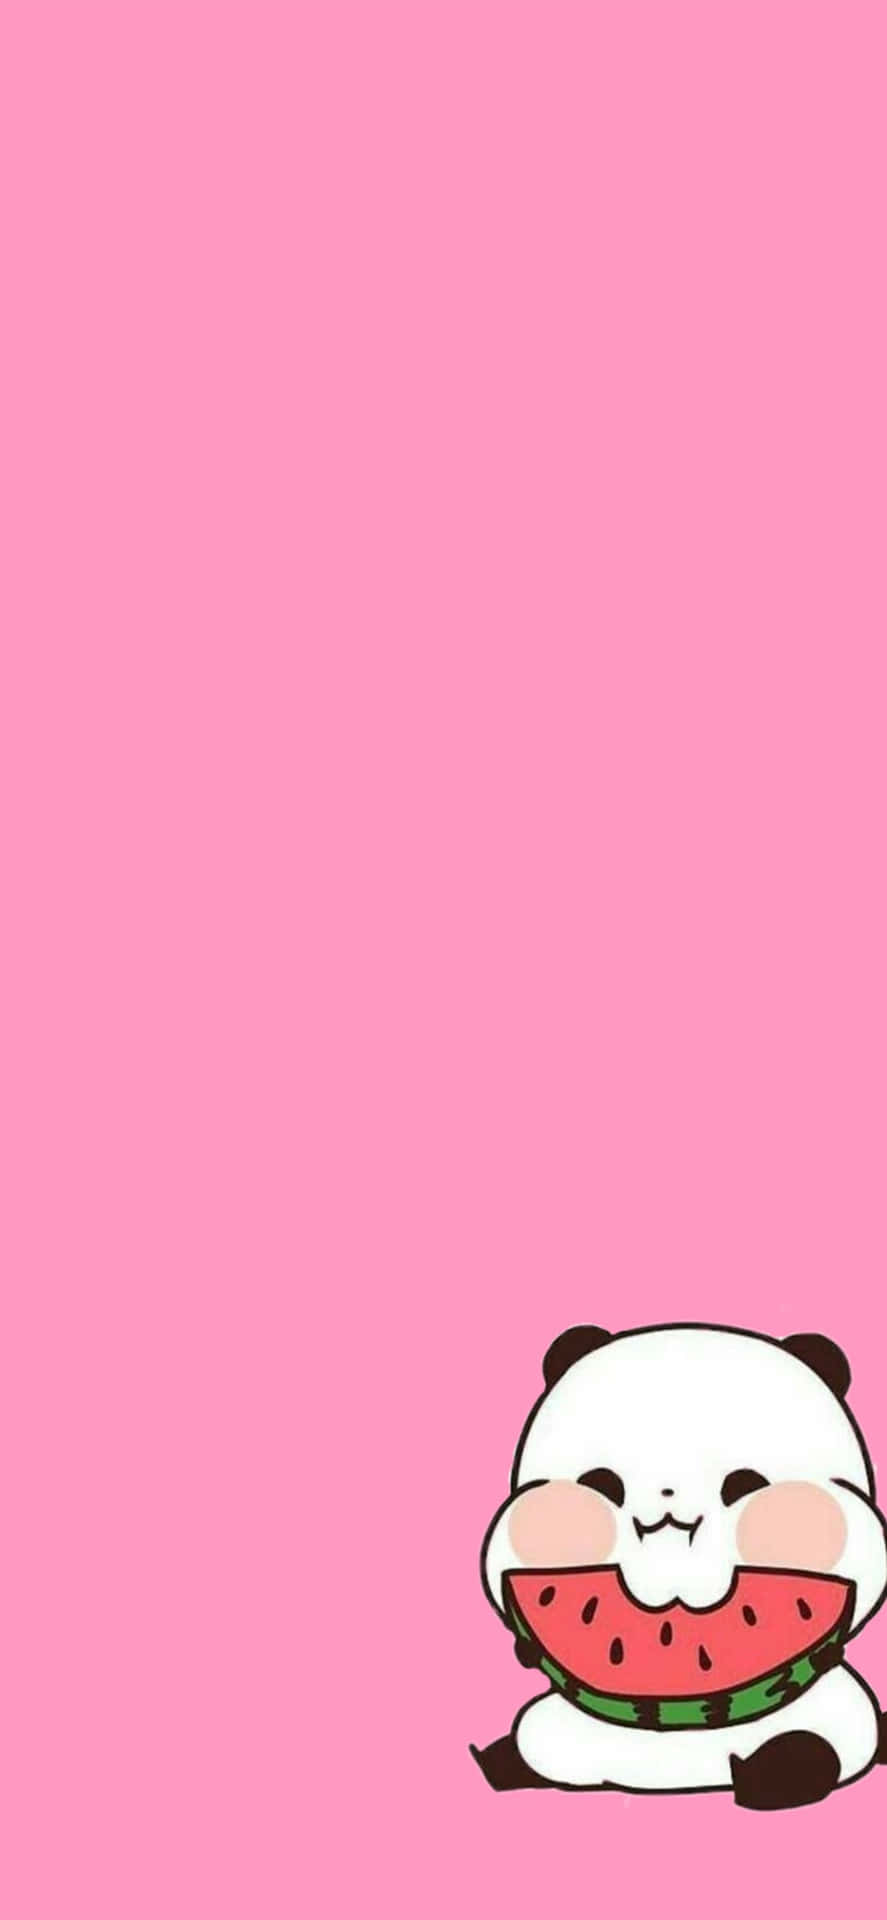 Cute Cartoon Panda Pink Cheeks Wallpaper